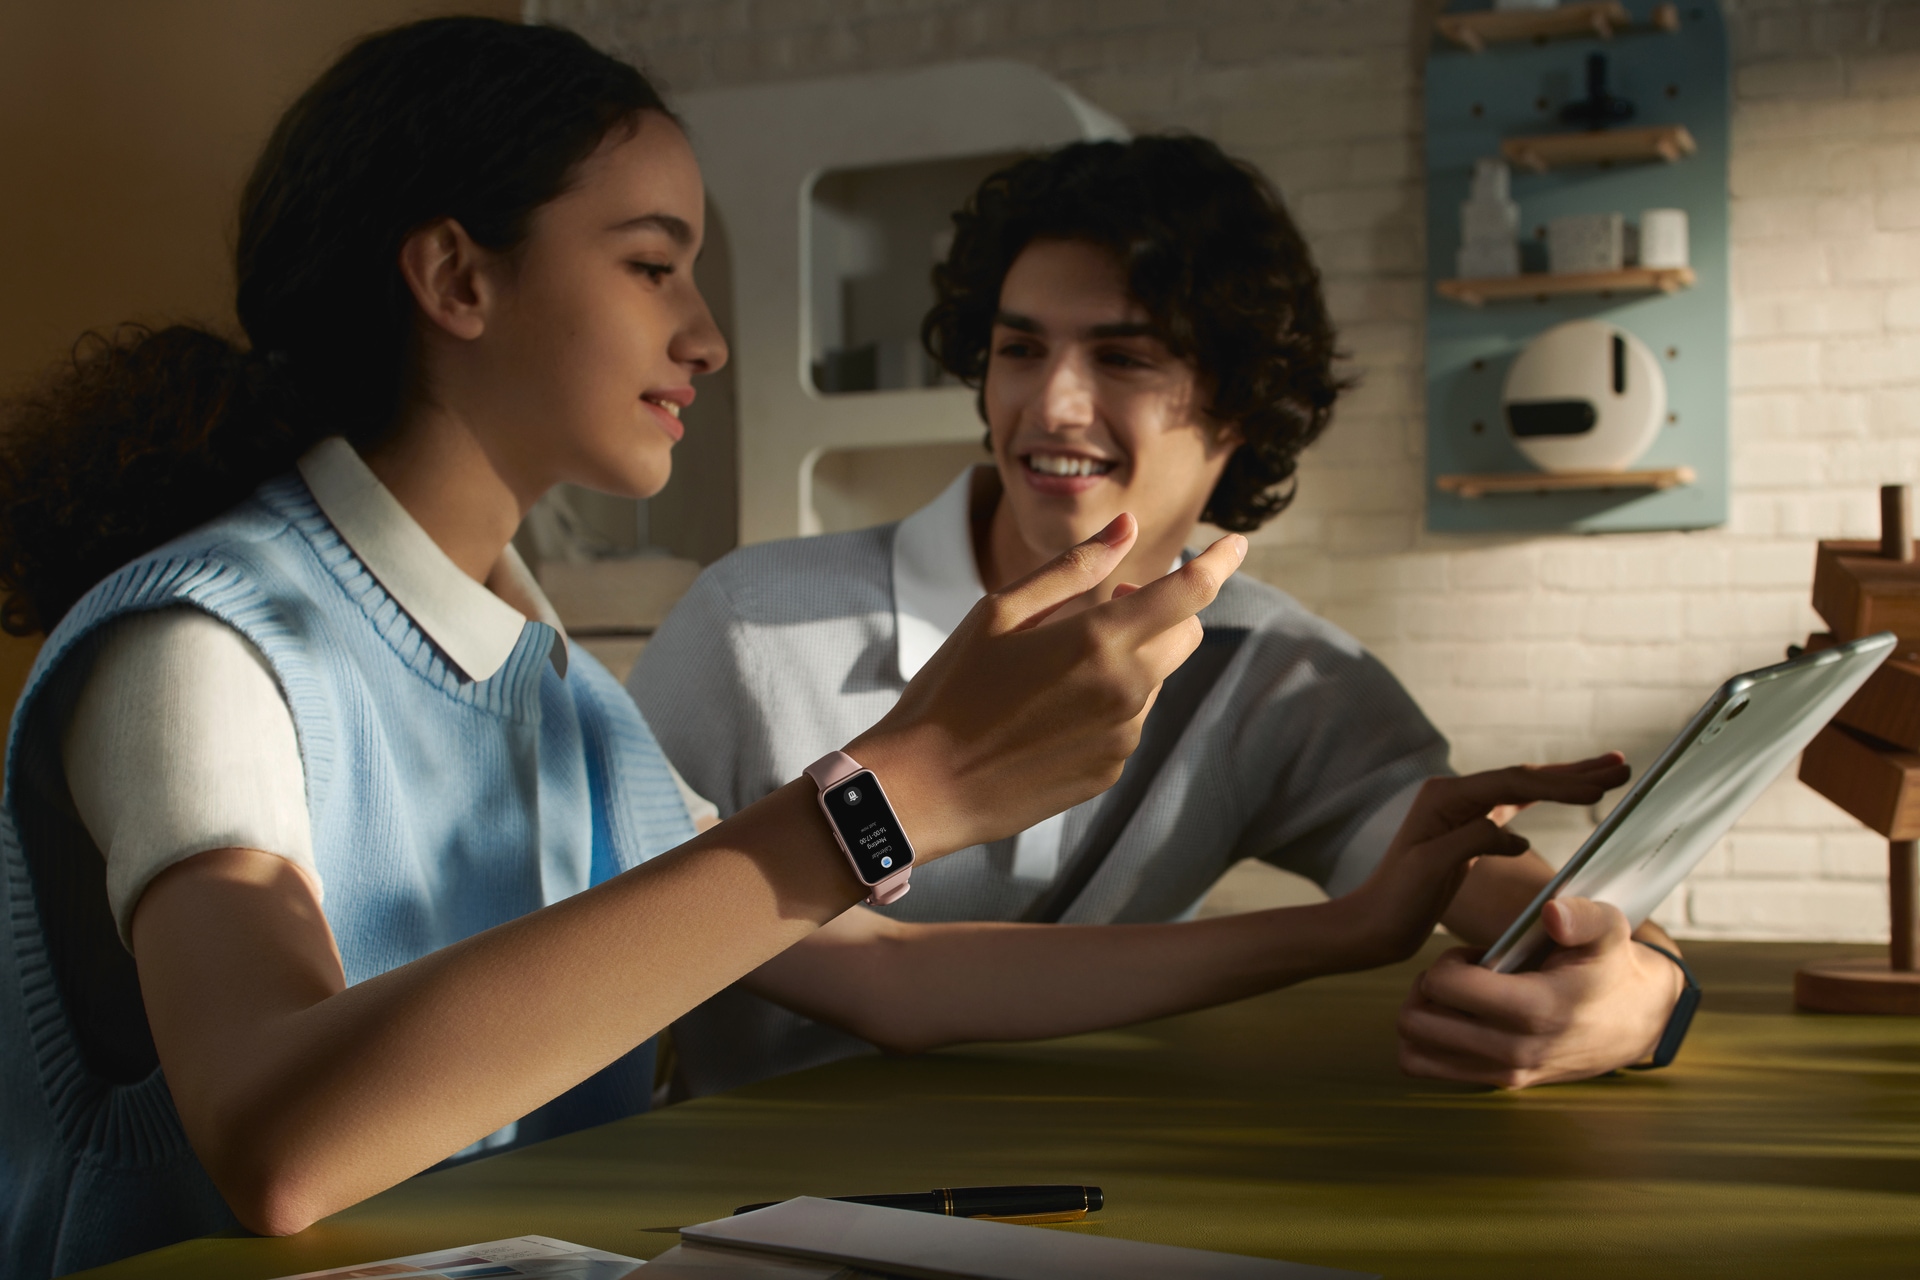 Huawei Smartwatch »Band 8«